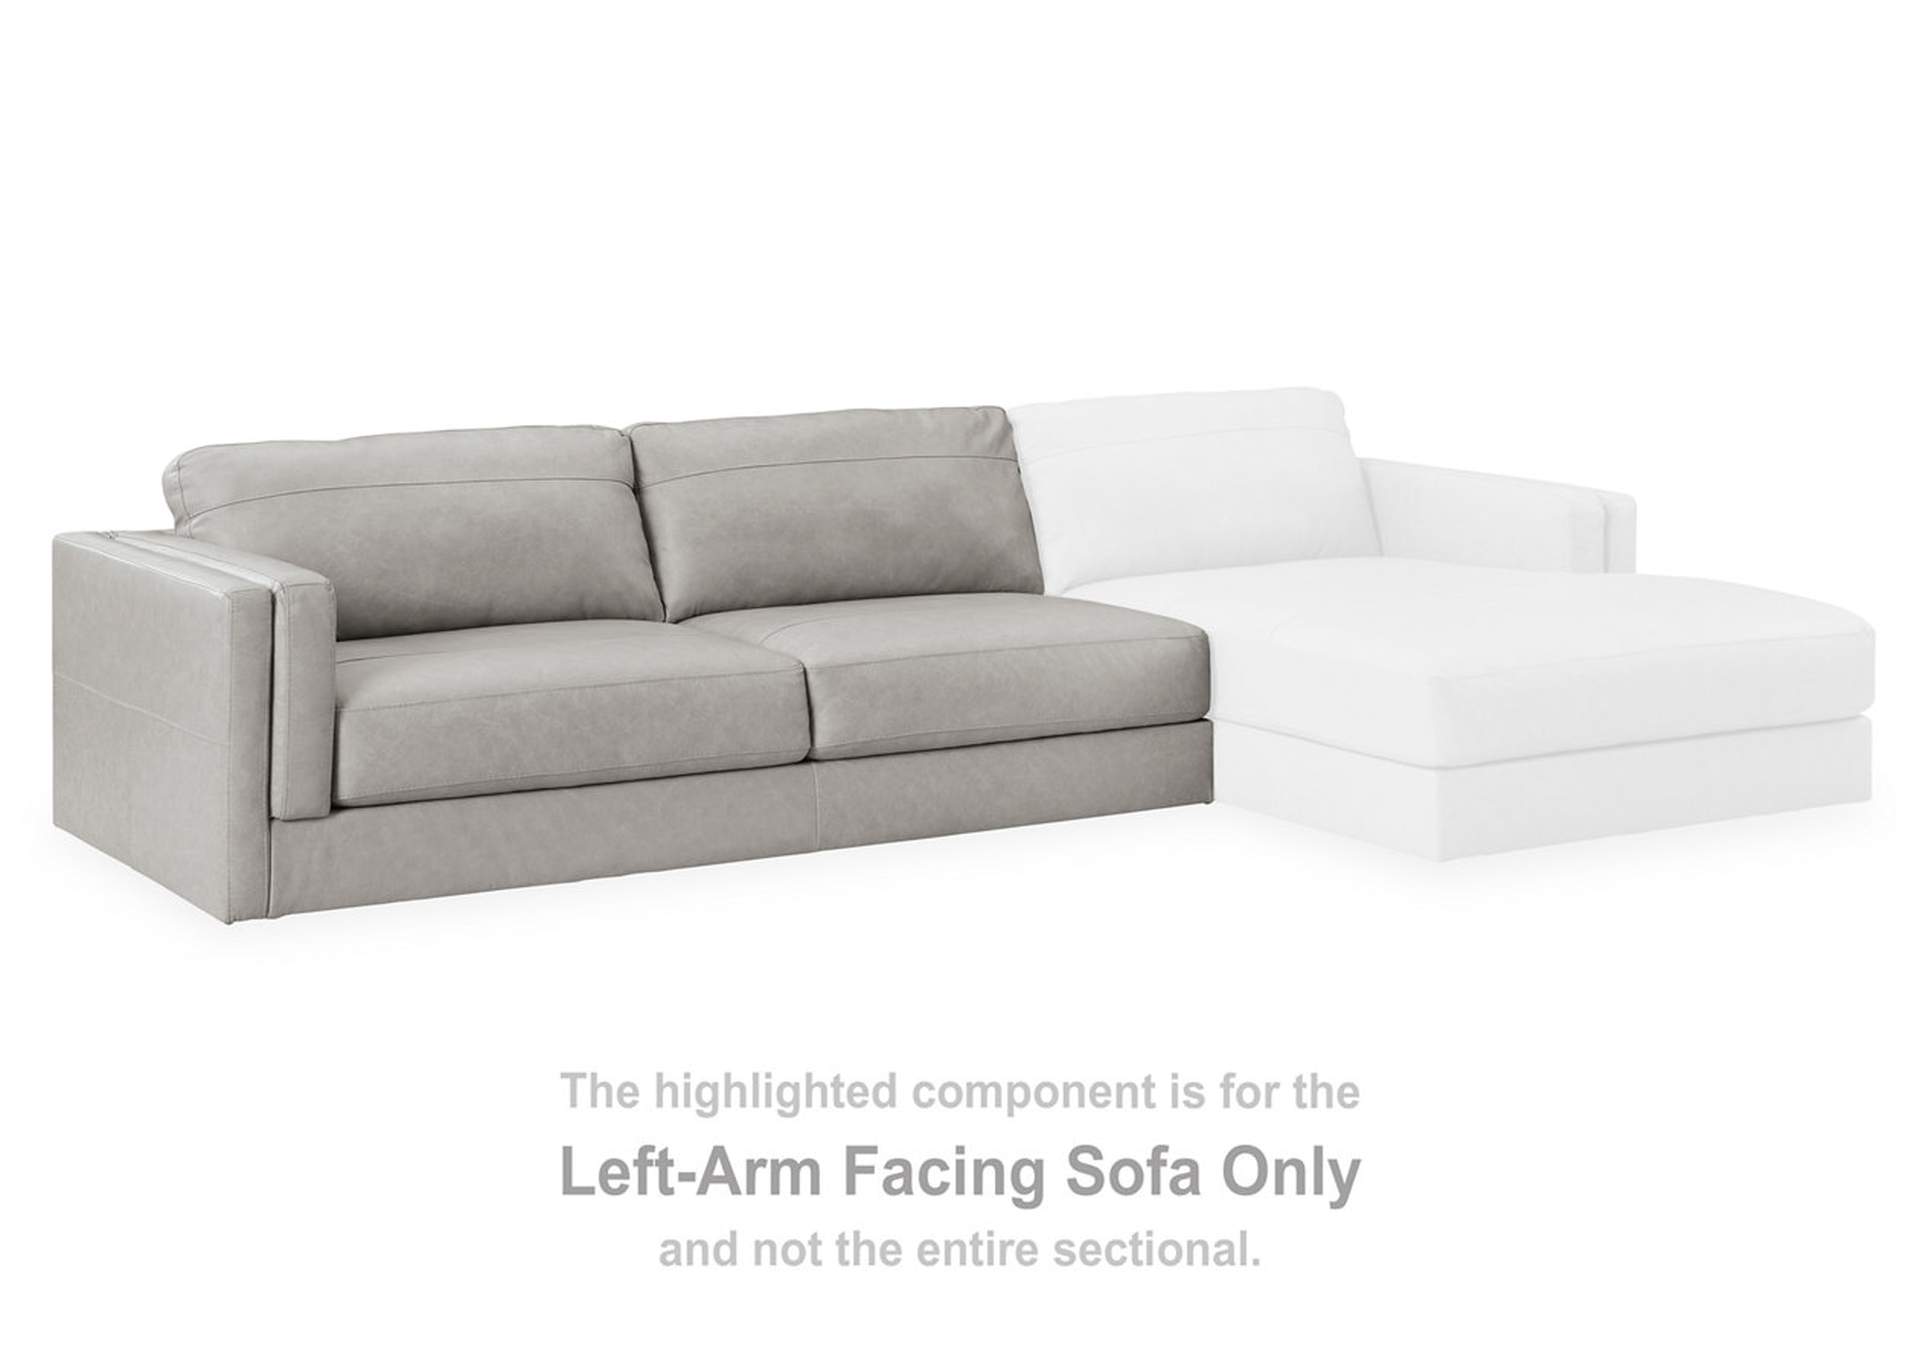 Amiata Left-Arm Facing Sofa,Signature Design By Ashley